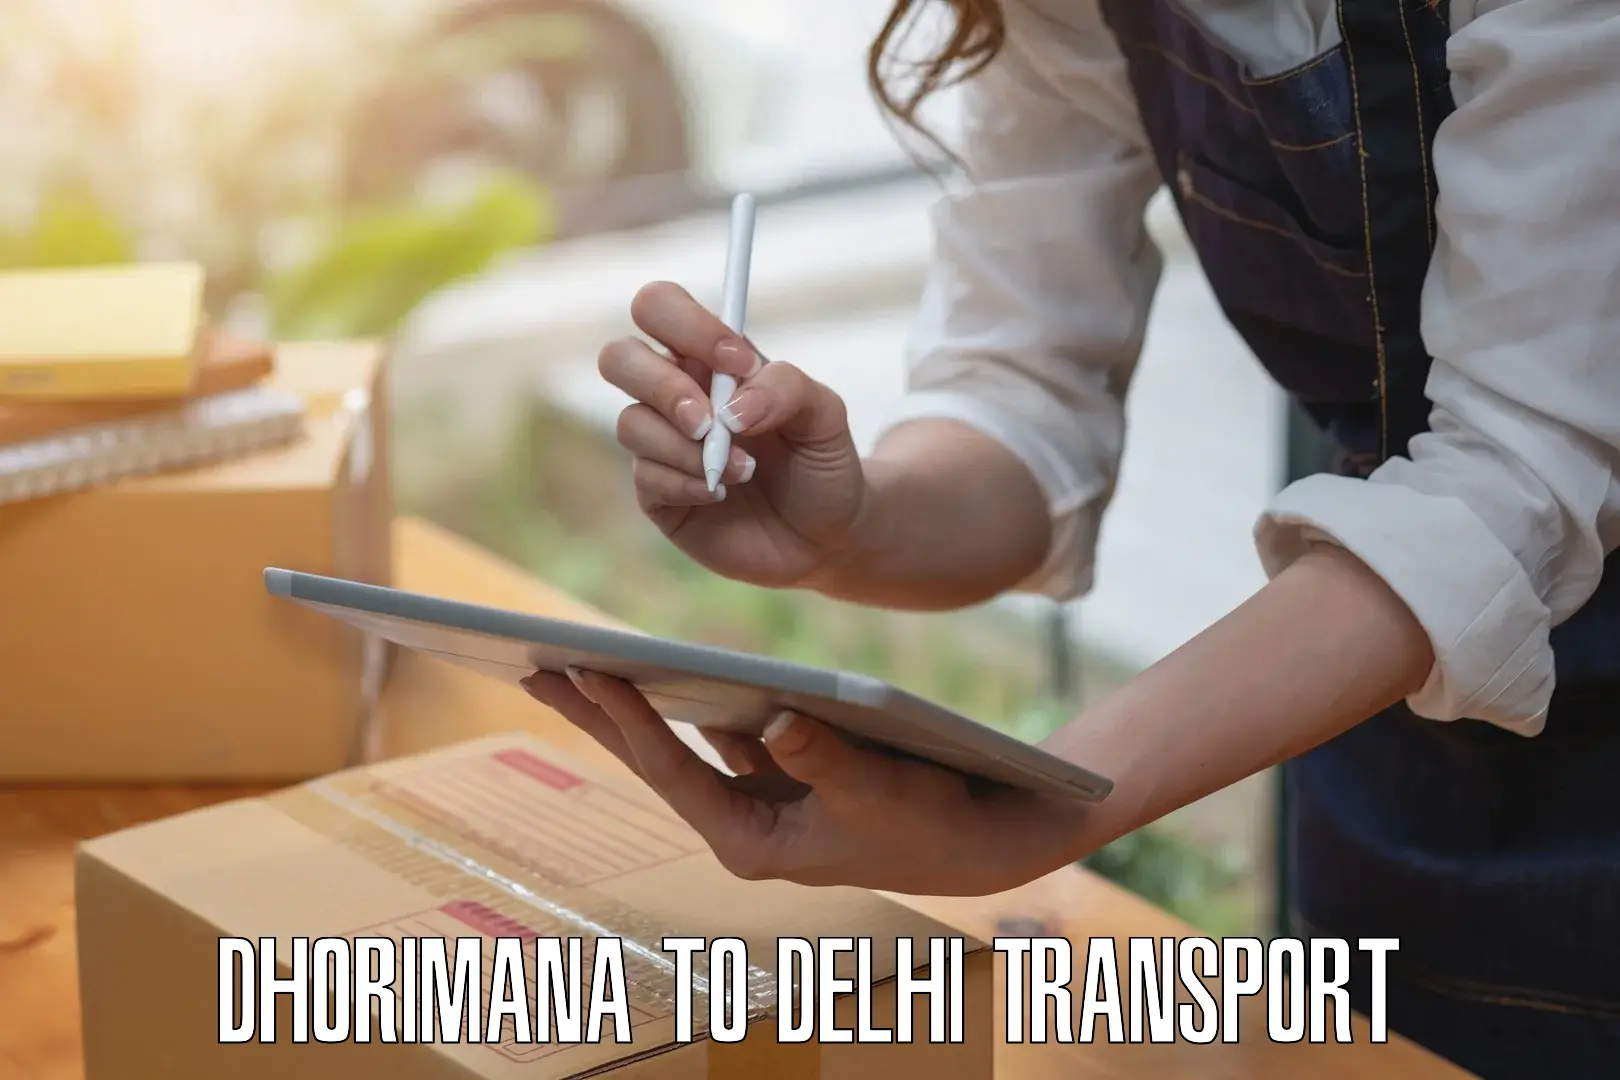 Bike transport service in Dhorimana to IIT Delhi